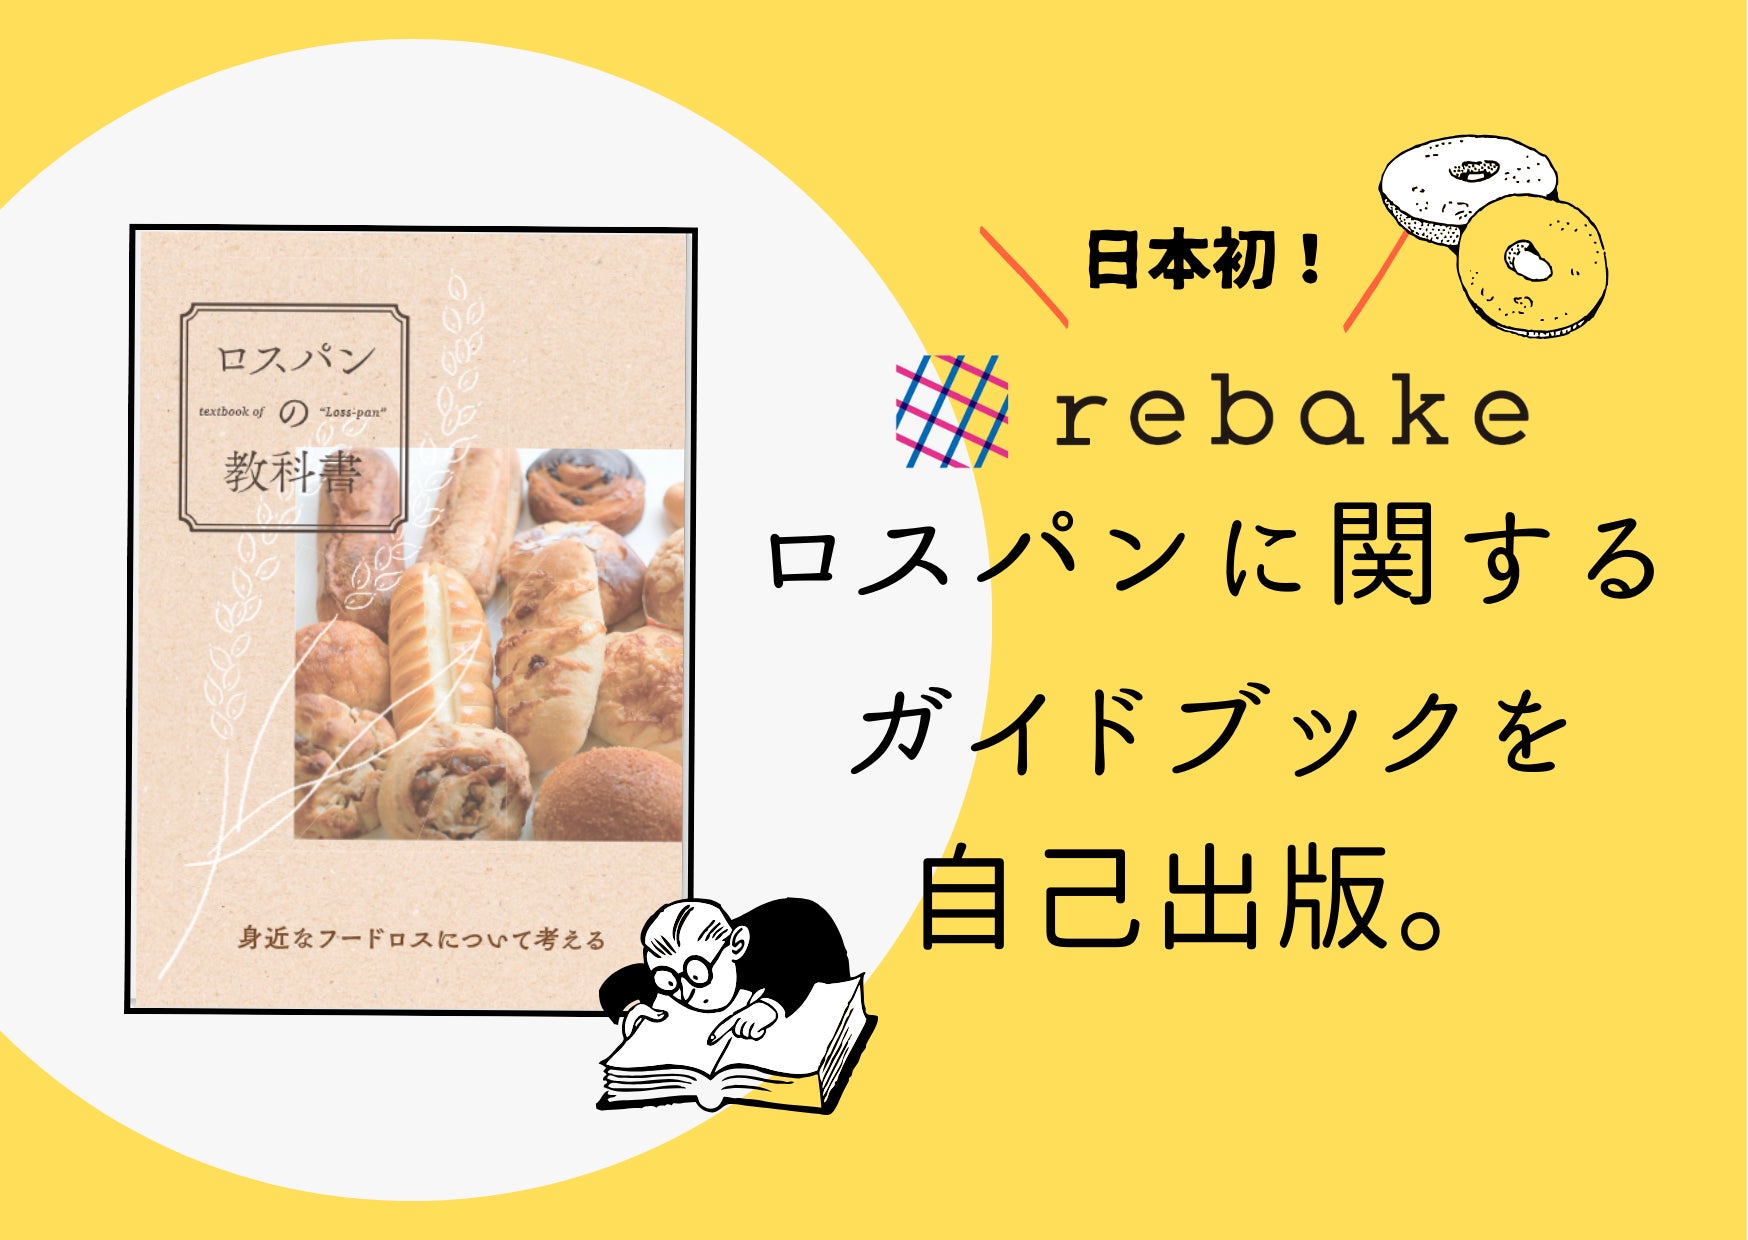 京都のロースタリーラボ　「北大路焙煎室」にて1つ星レストランシェフによる「カレー」を1日４食、提供開始。2月２６日より。第一弾は、伊勢海老カレー。